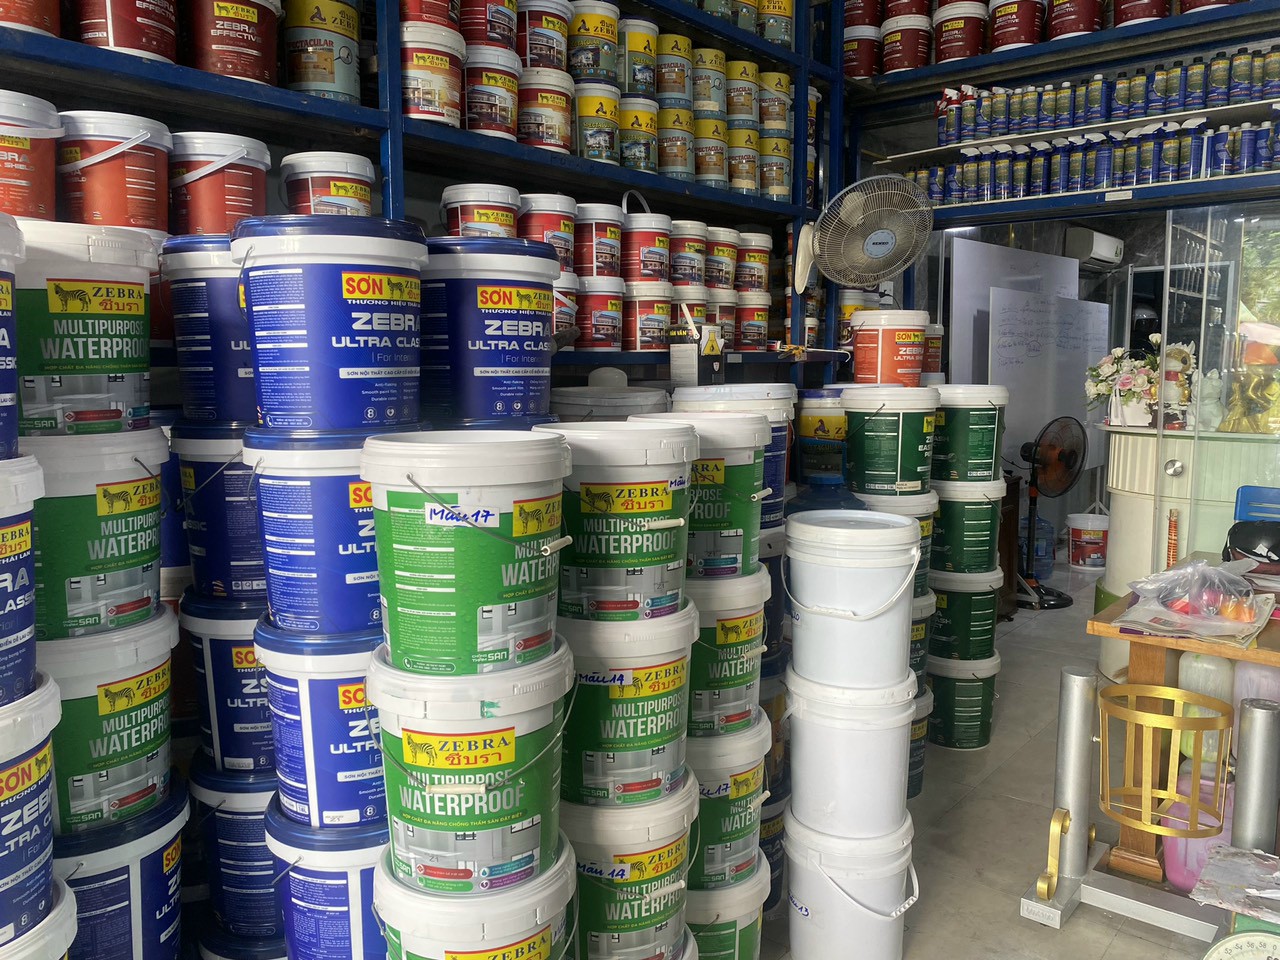 Tìm kiếm nhà cung cấp sơn Dulux, Jotun, Kova chất lượng tại Tân Bình